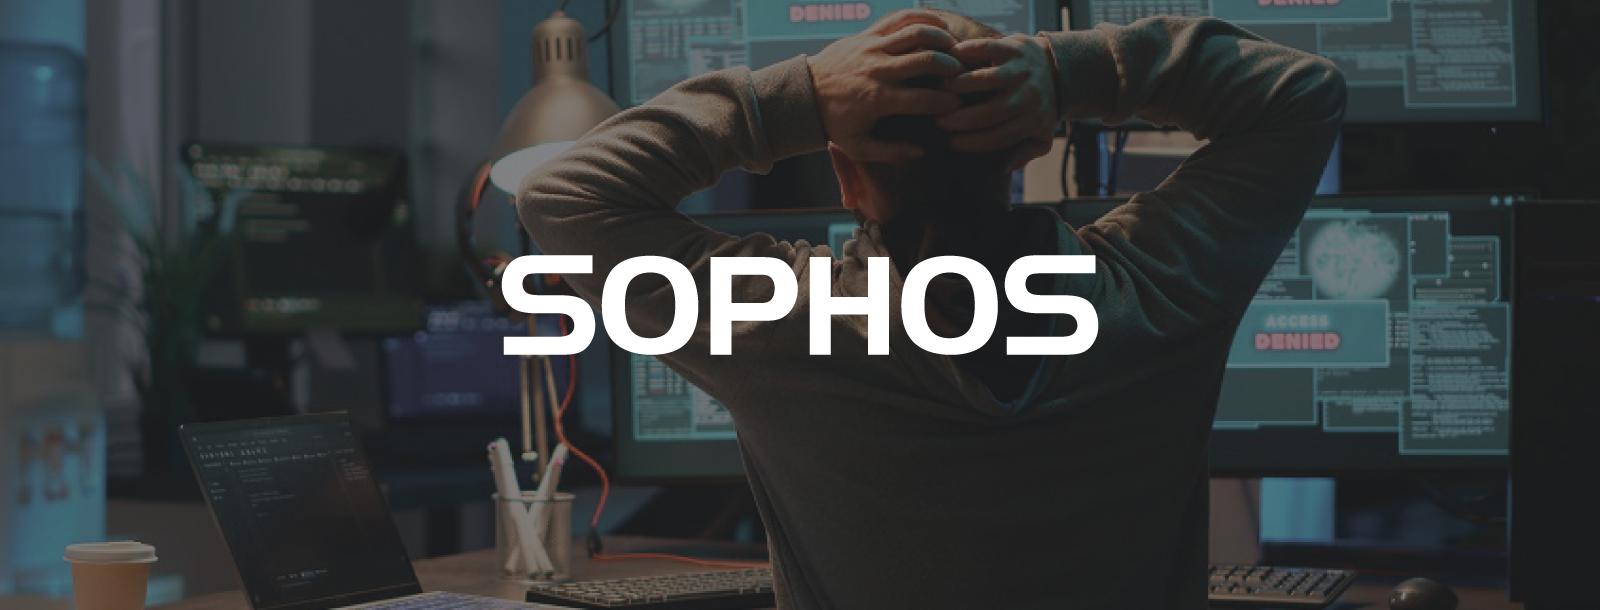 Raport Sophos: 3 na 4 ataki ransomware kończą się zaszyfrowaniem danych